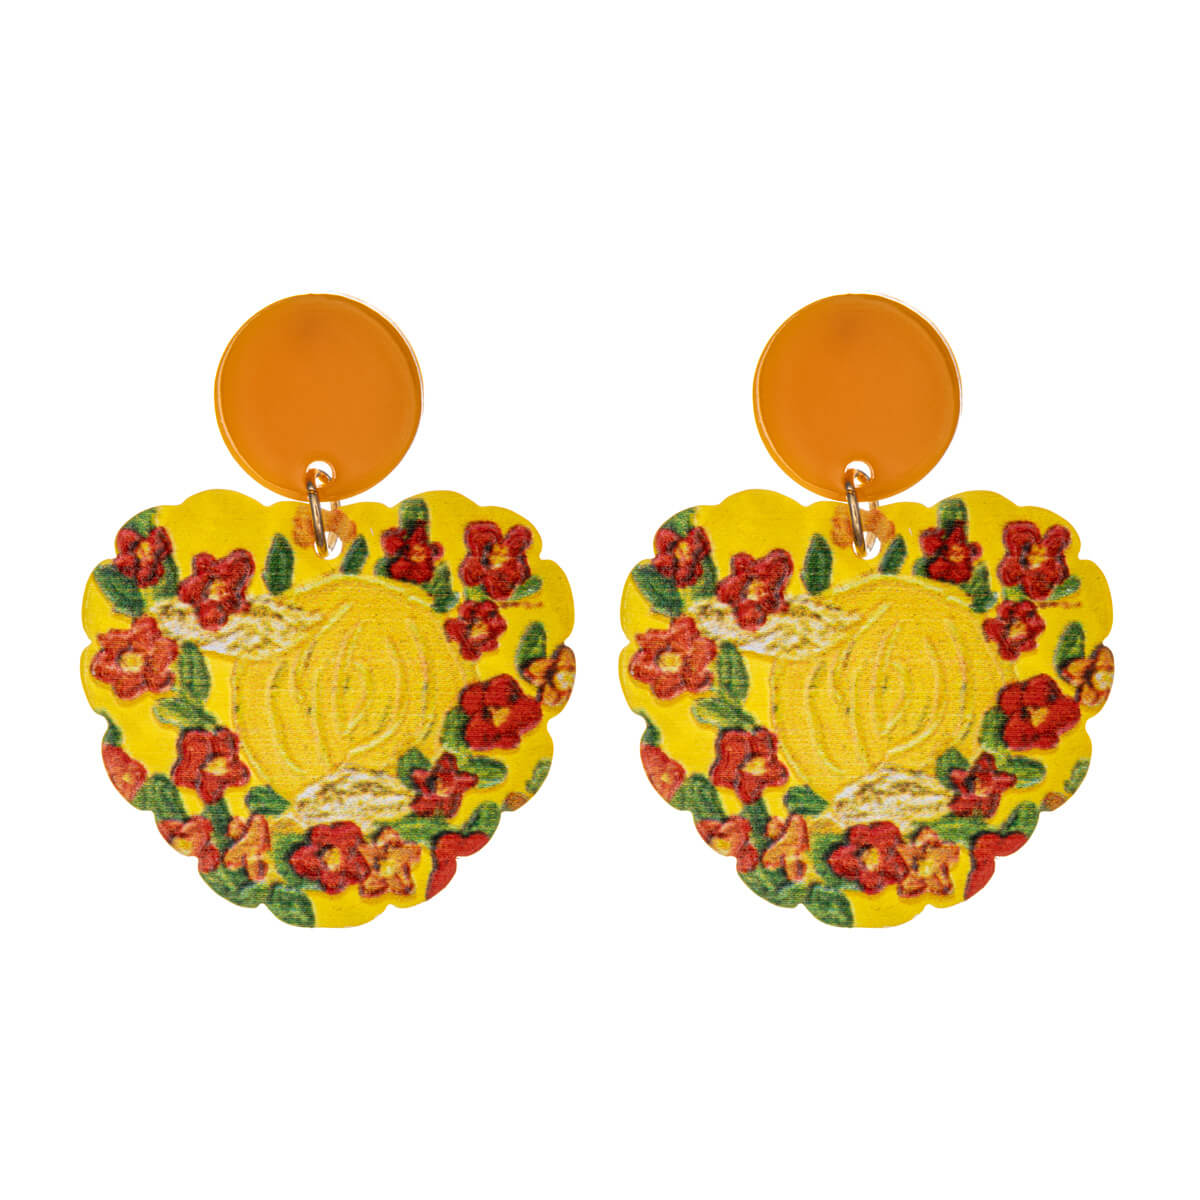 Heart shaped flower earrings